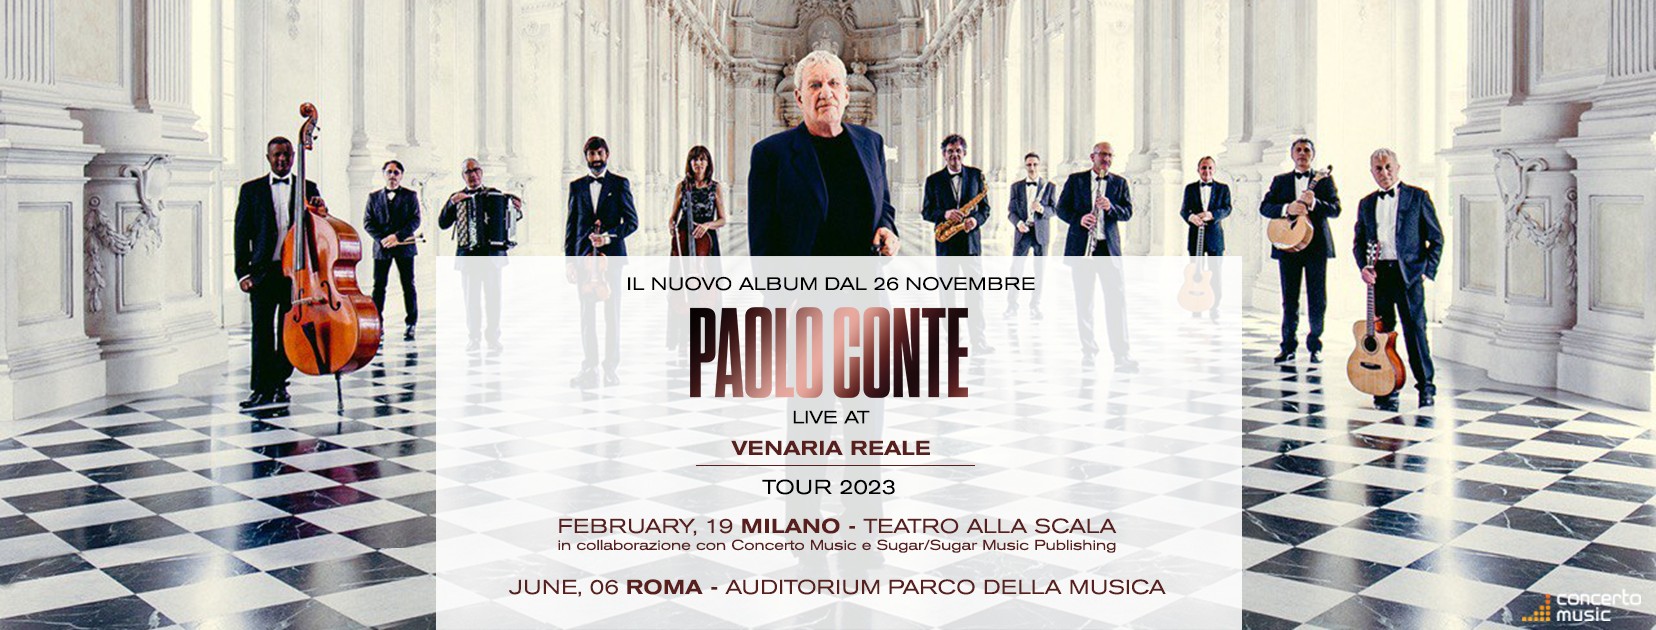 Paolo Conte Tour 2023